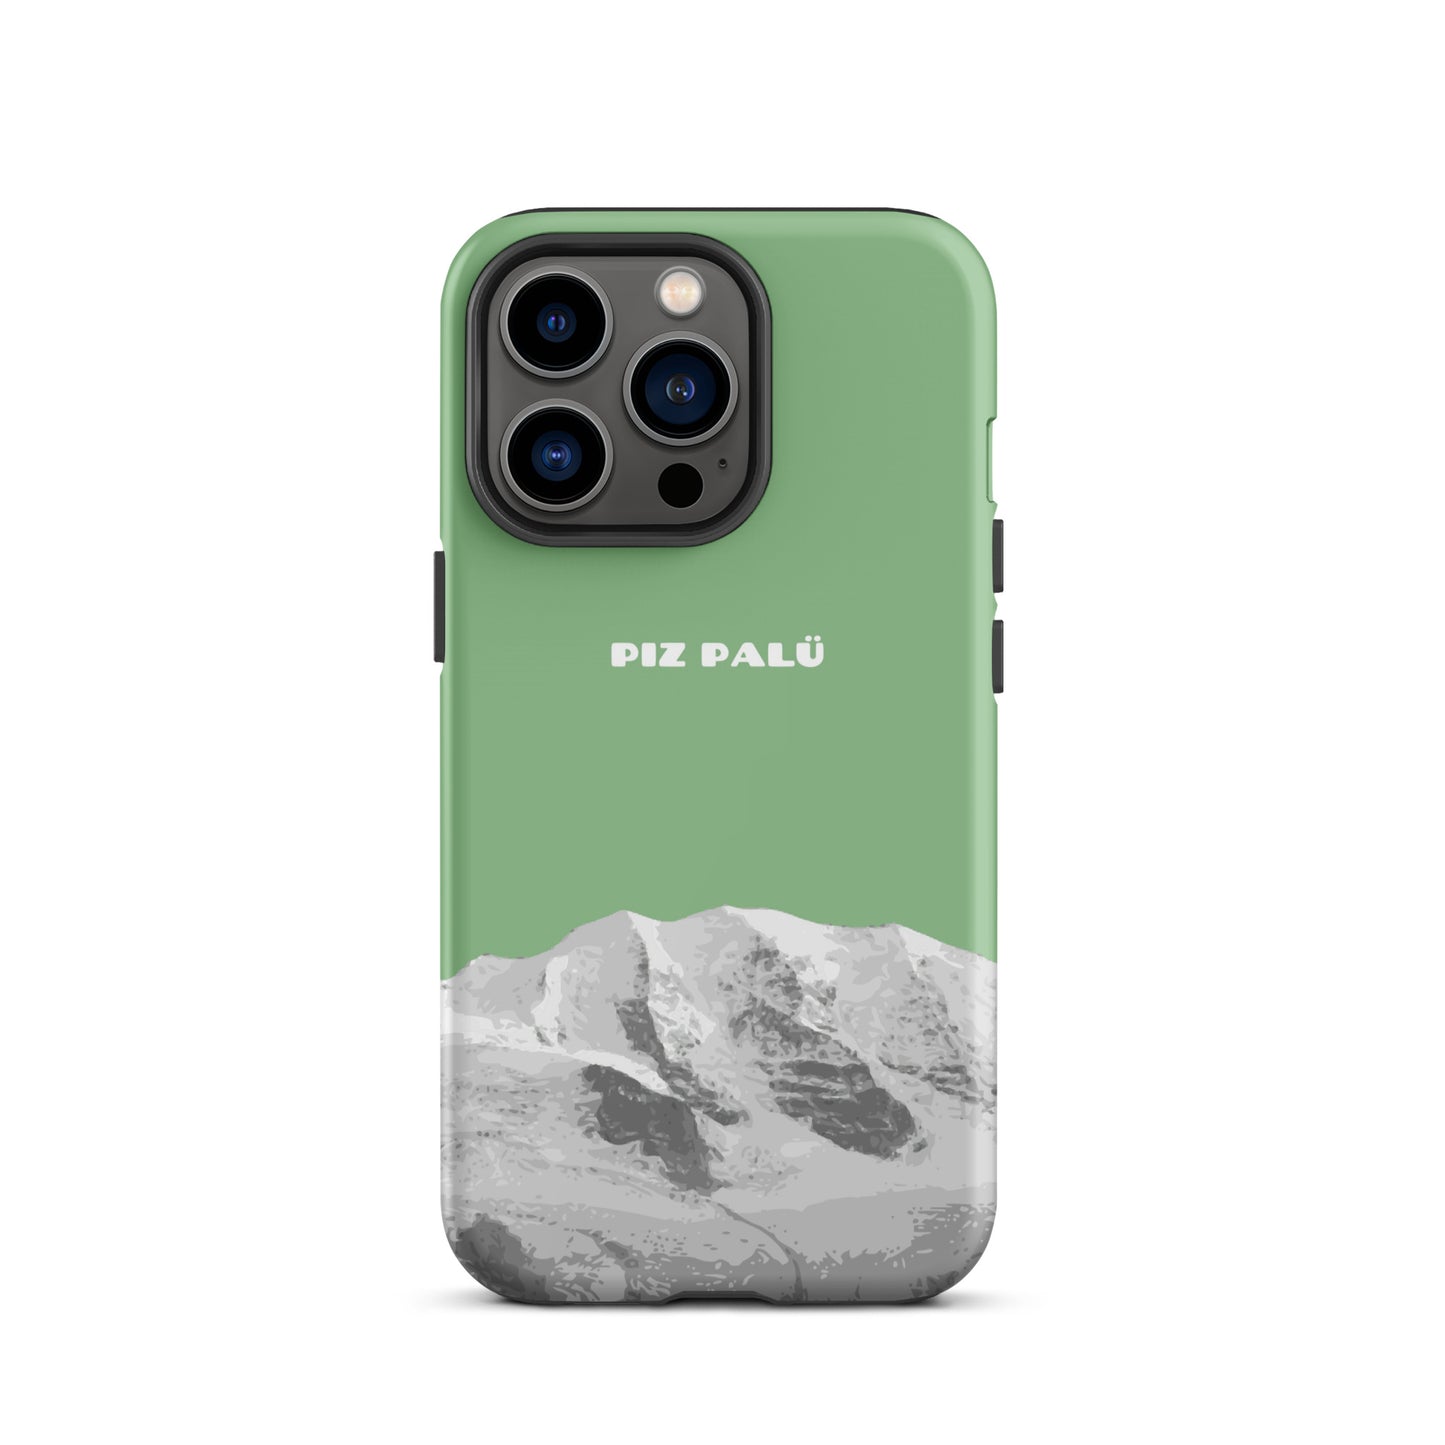 Hülle für das iPhone 13 Pro von Apple in der Farbe Hellgrün, dass den Piz Palü in Graubünden zeigt.